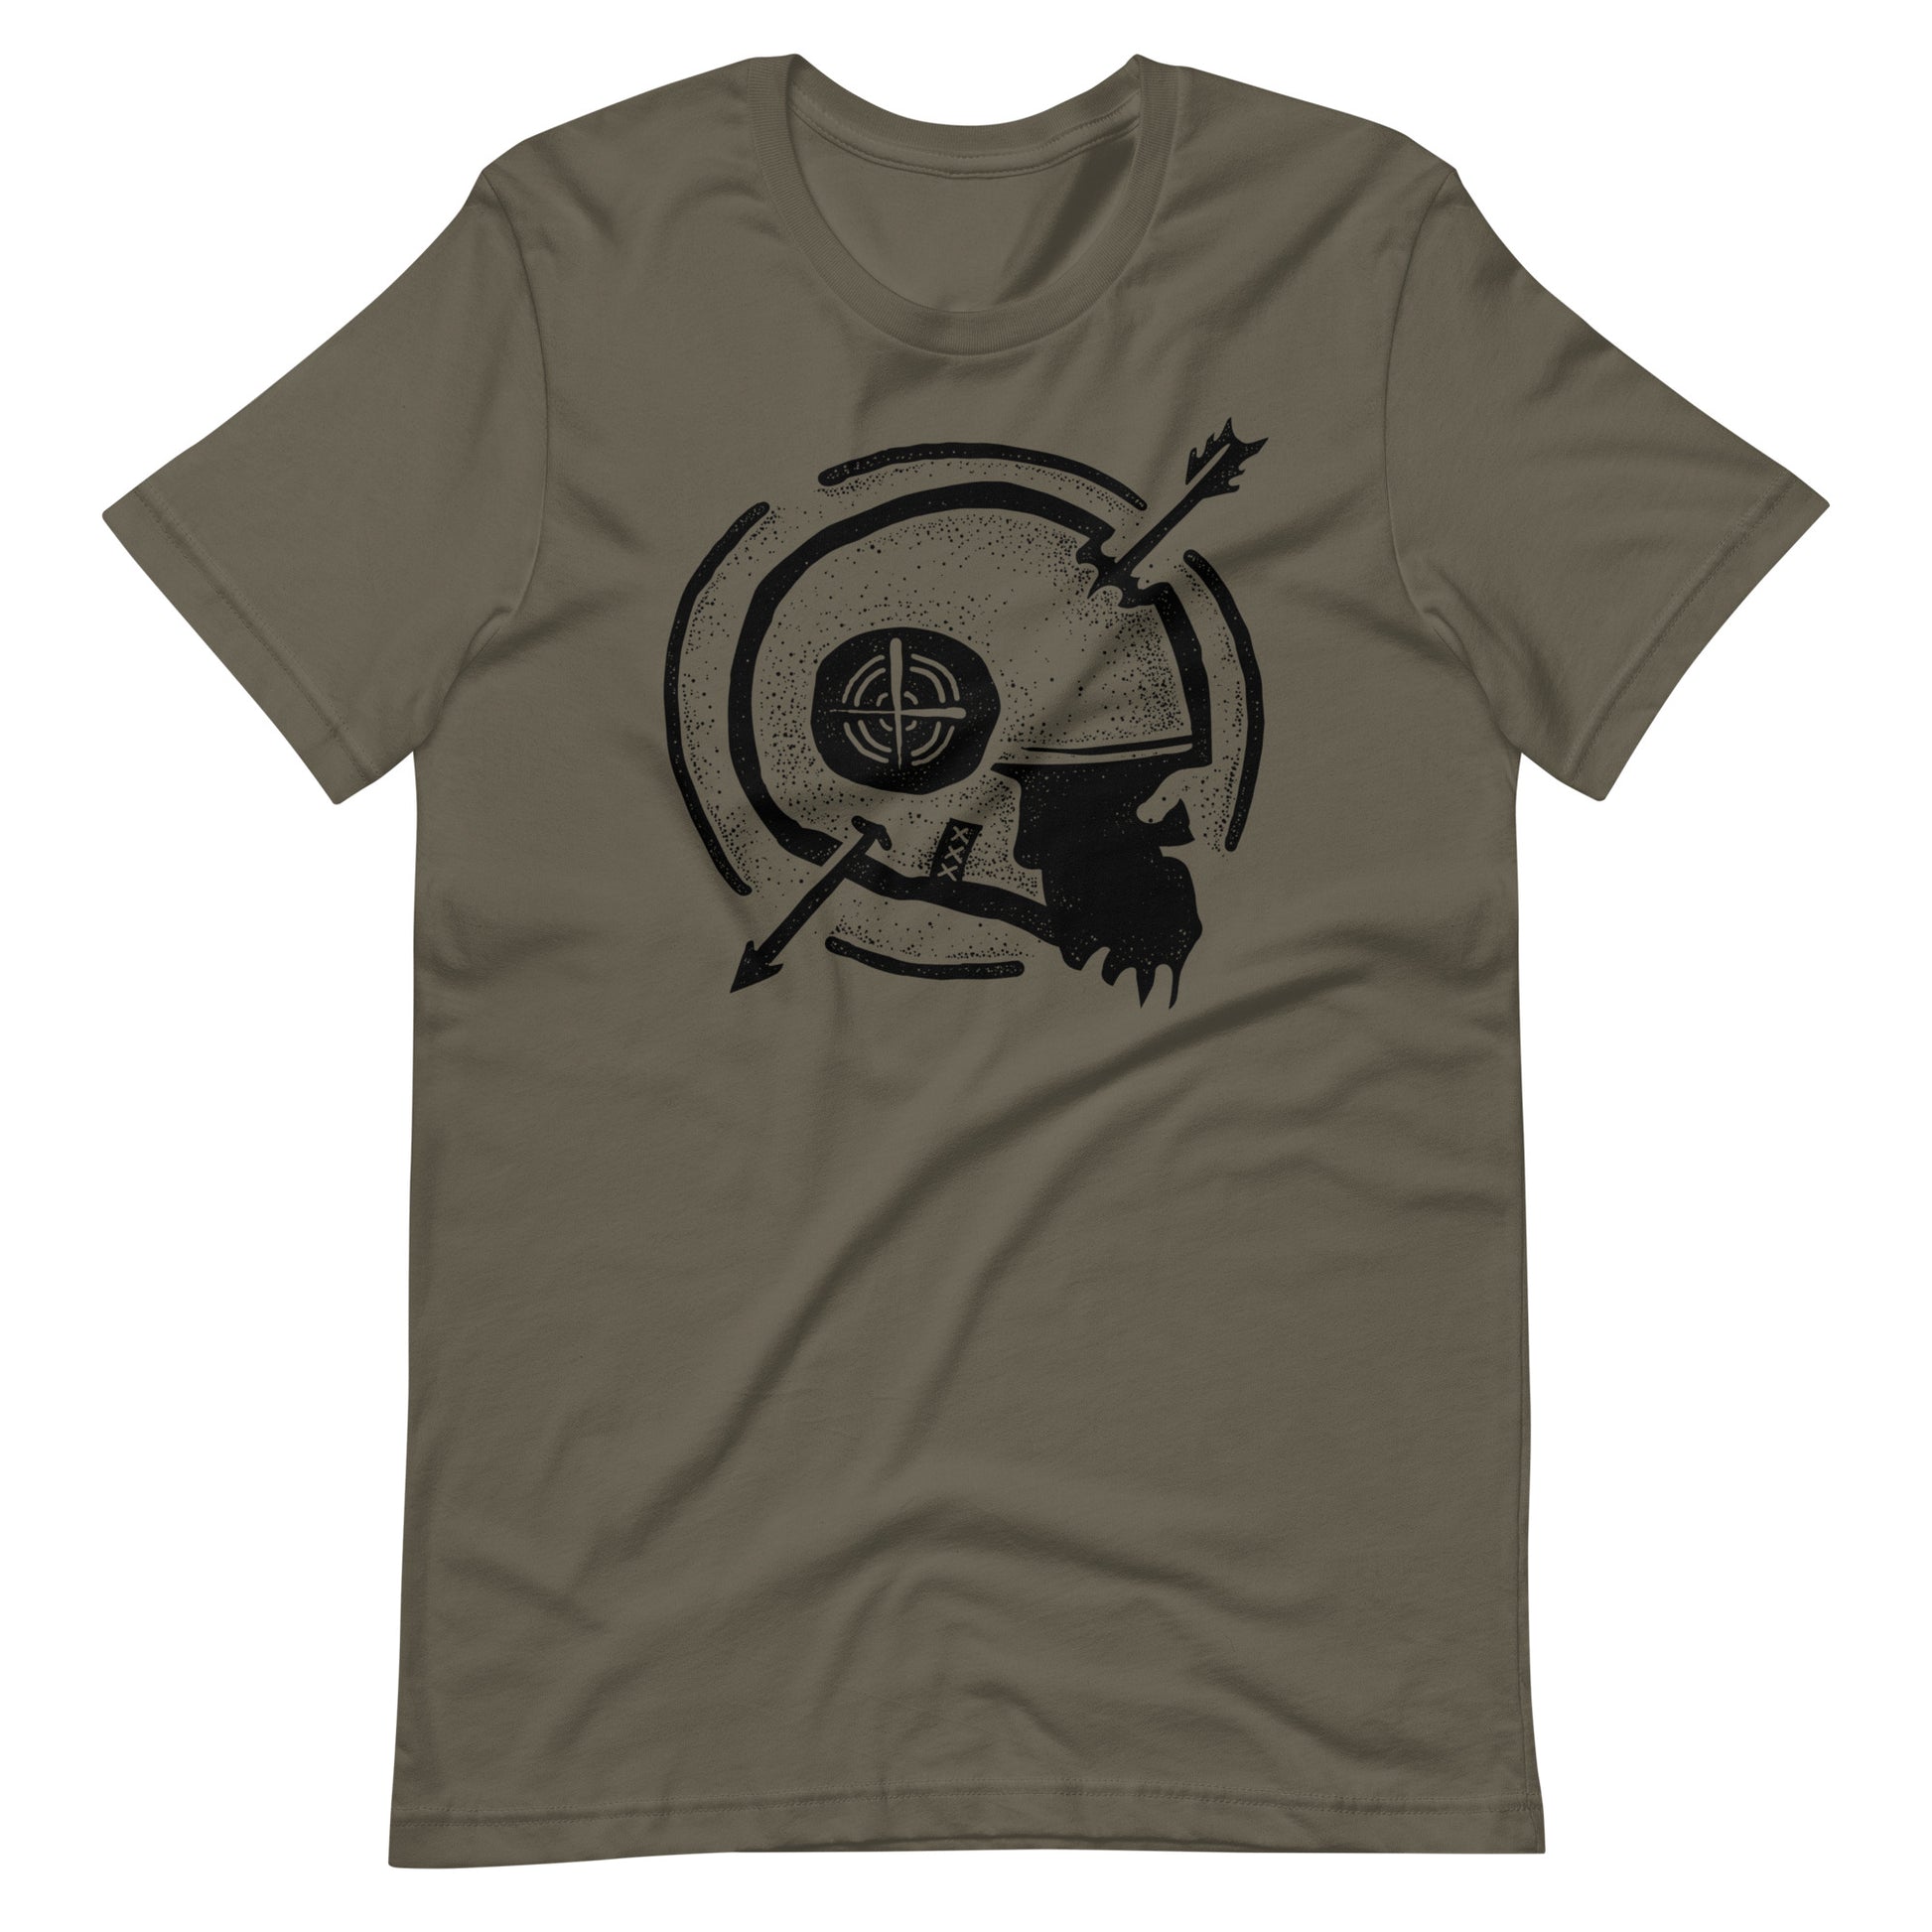 Dead Arrow Black - Men's t-shirt - Army Front